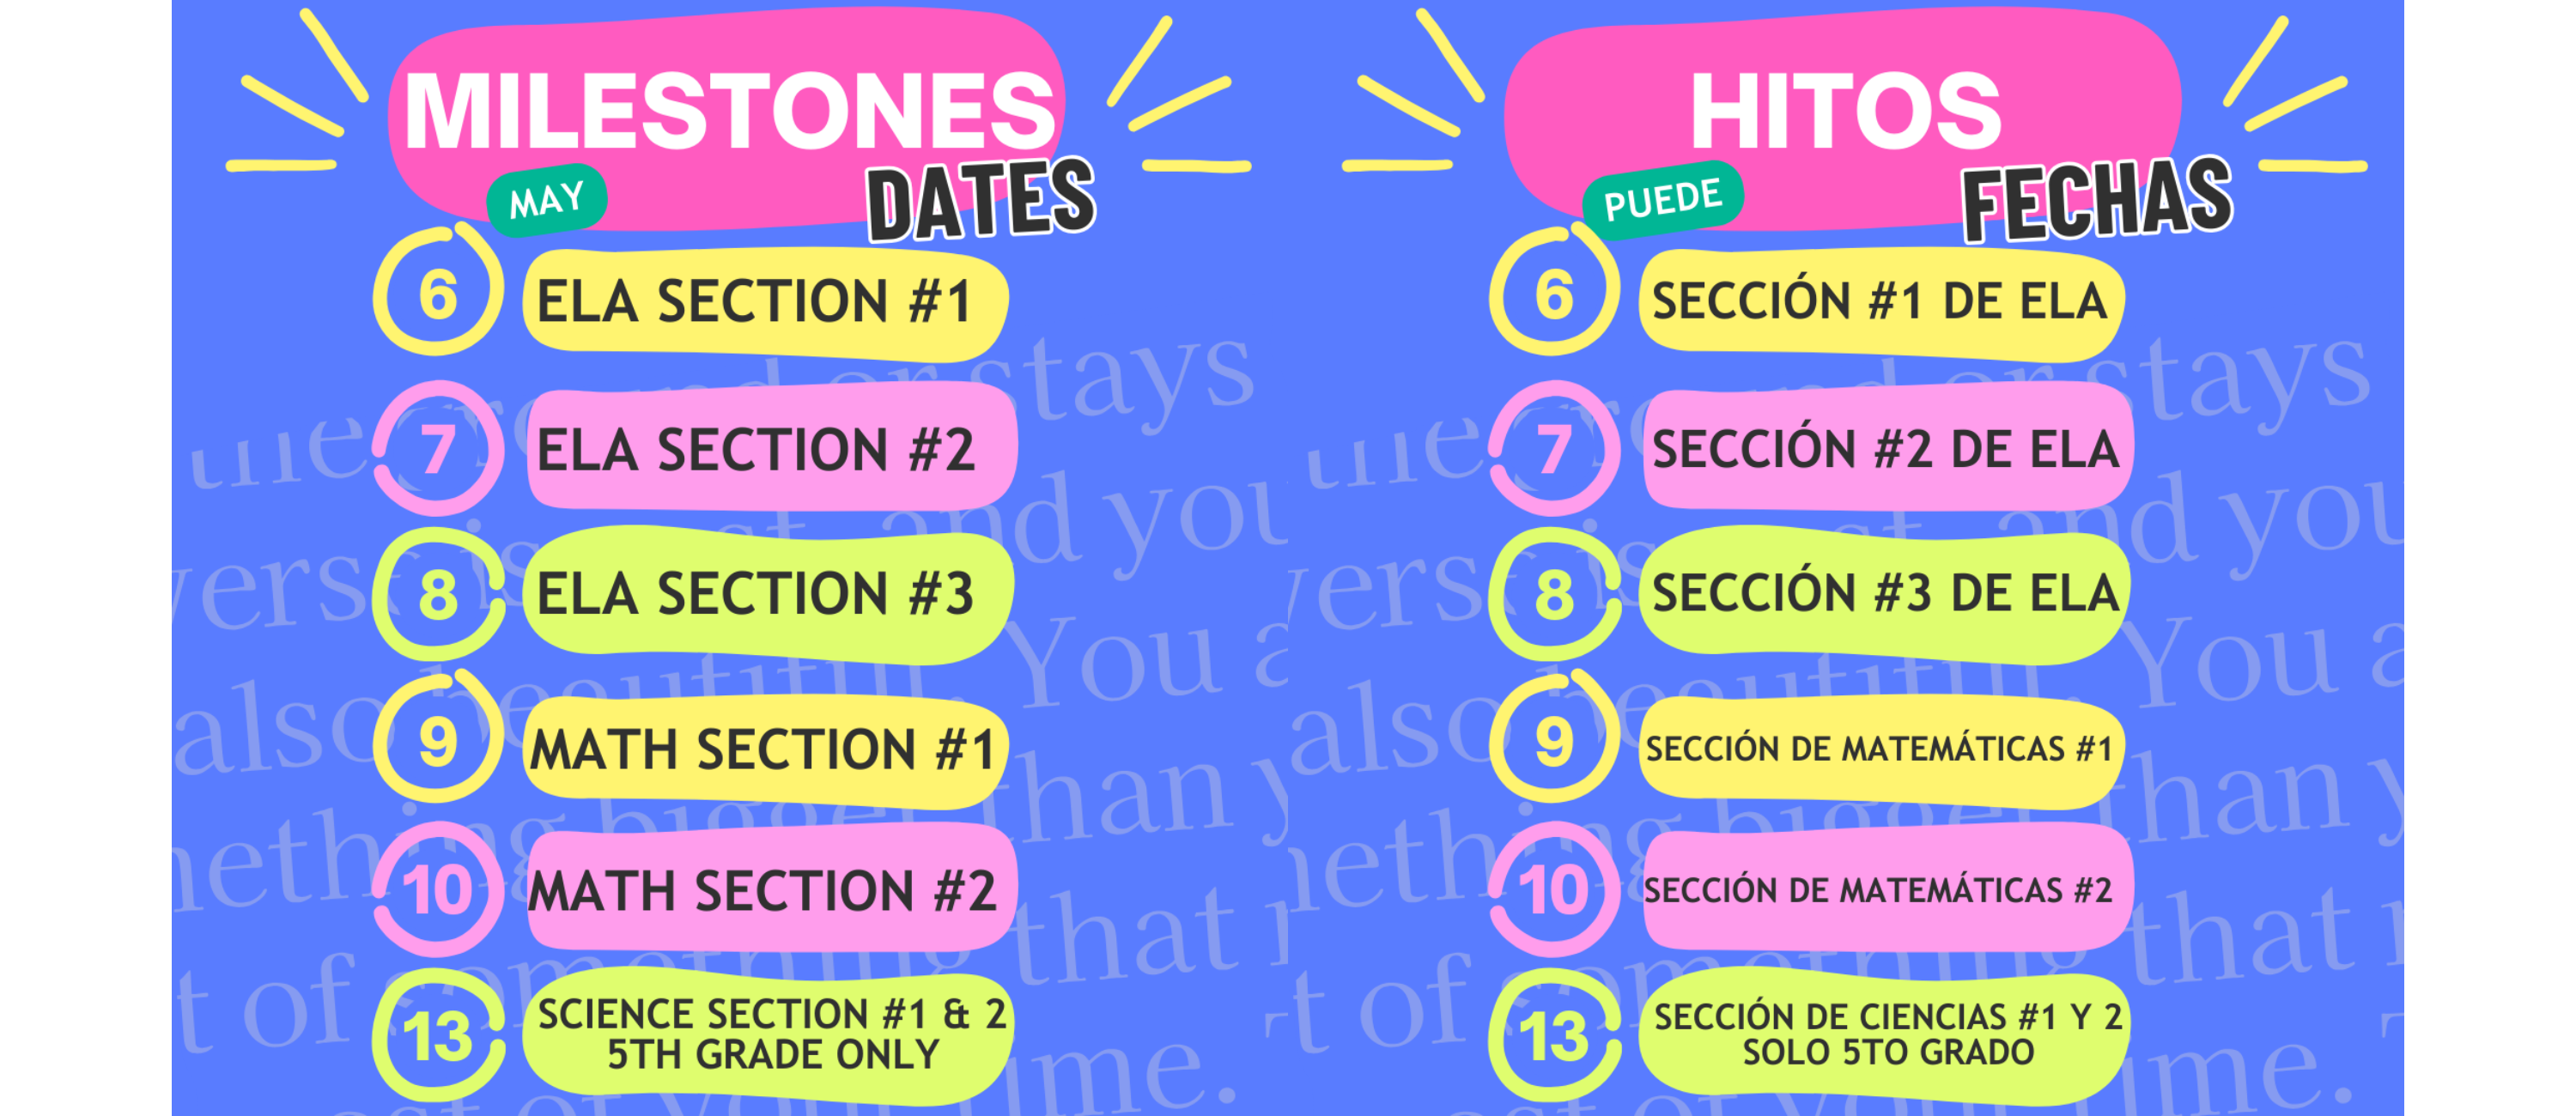 Milestones Dates